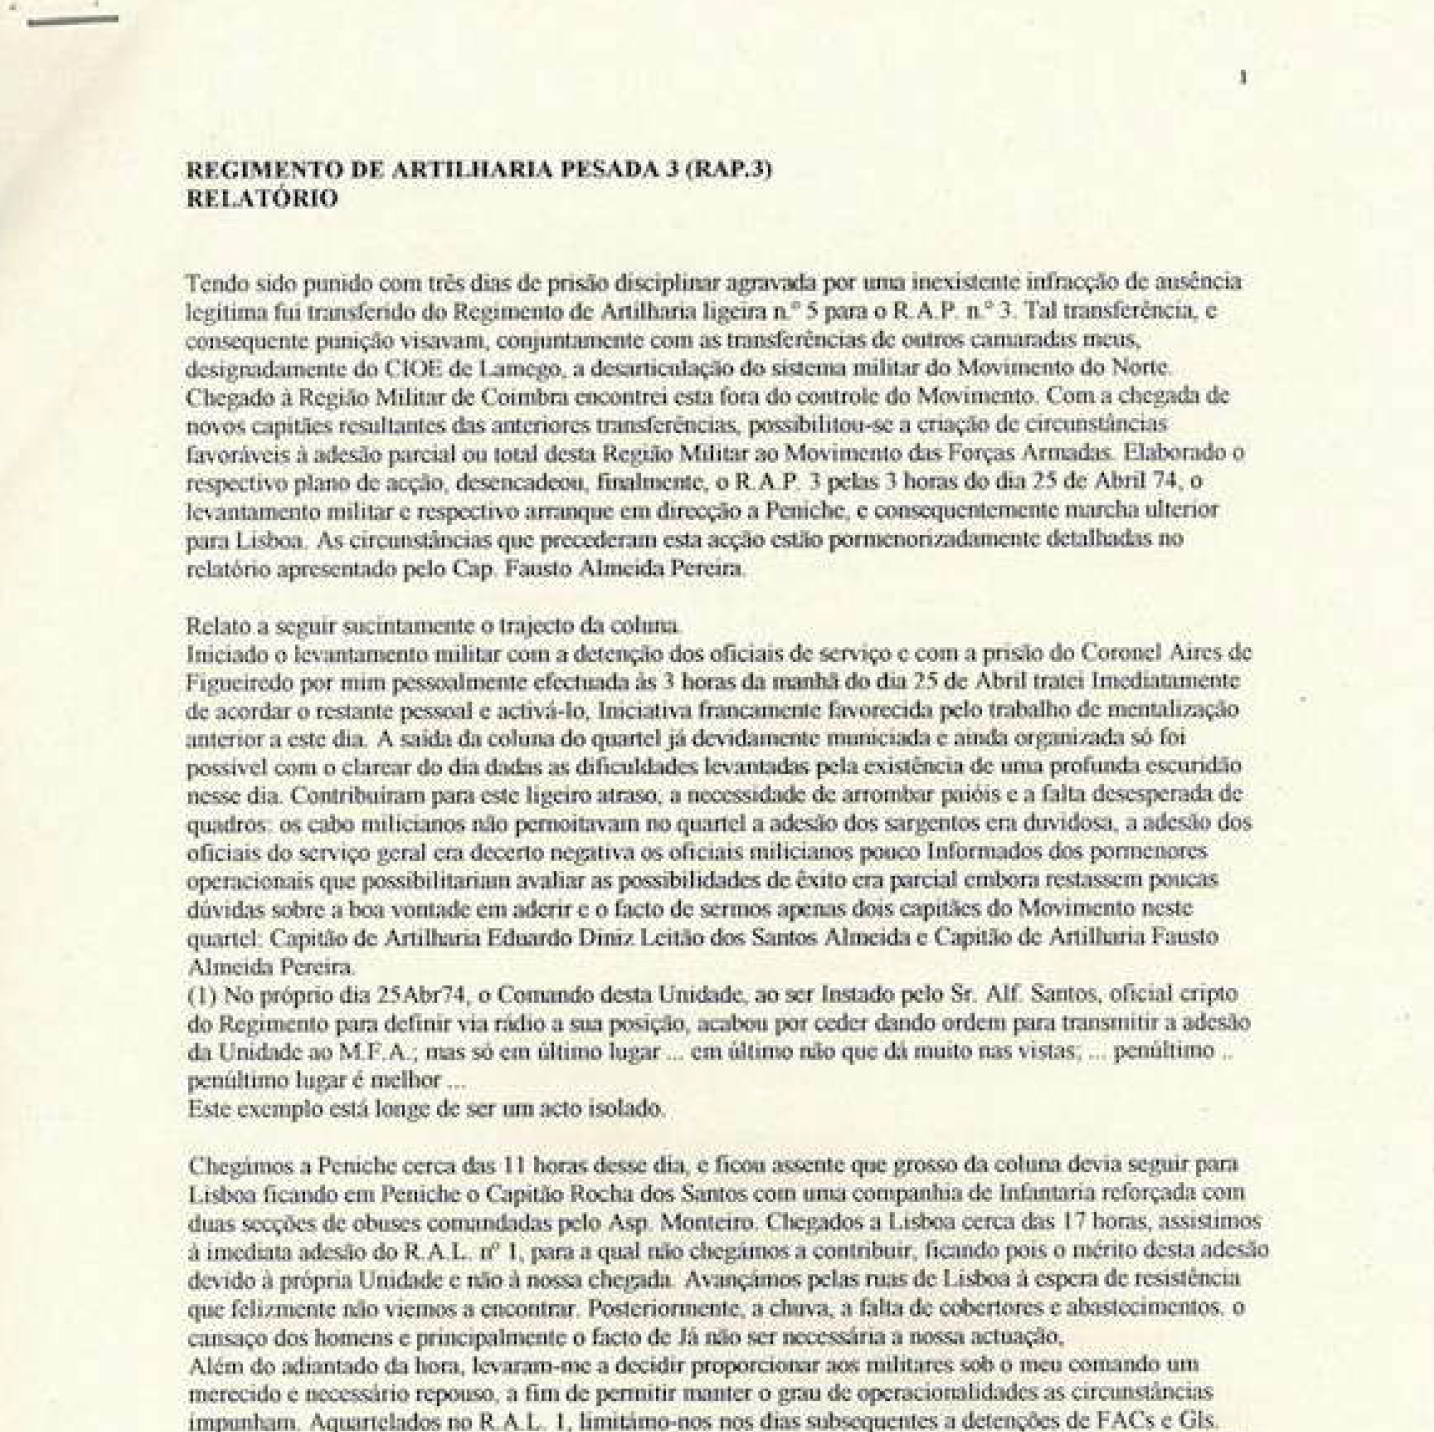 Regimento de Artilharia Pesada 3 - relatório - Figueira da Foz, 1 de maio de 1974